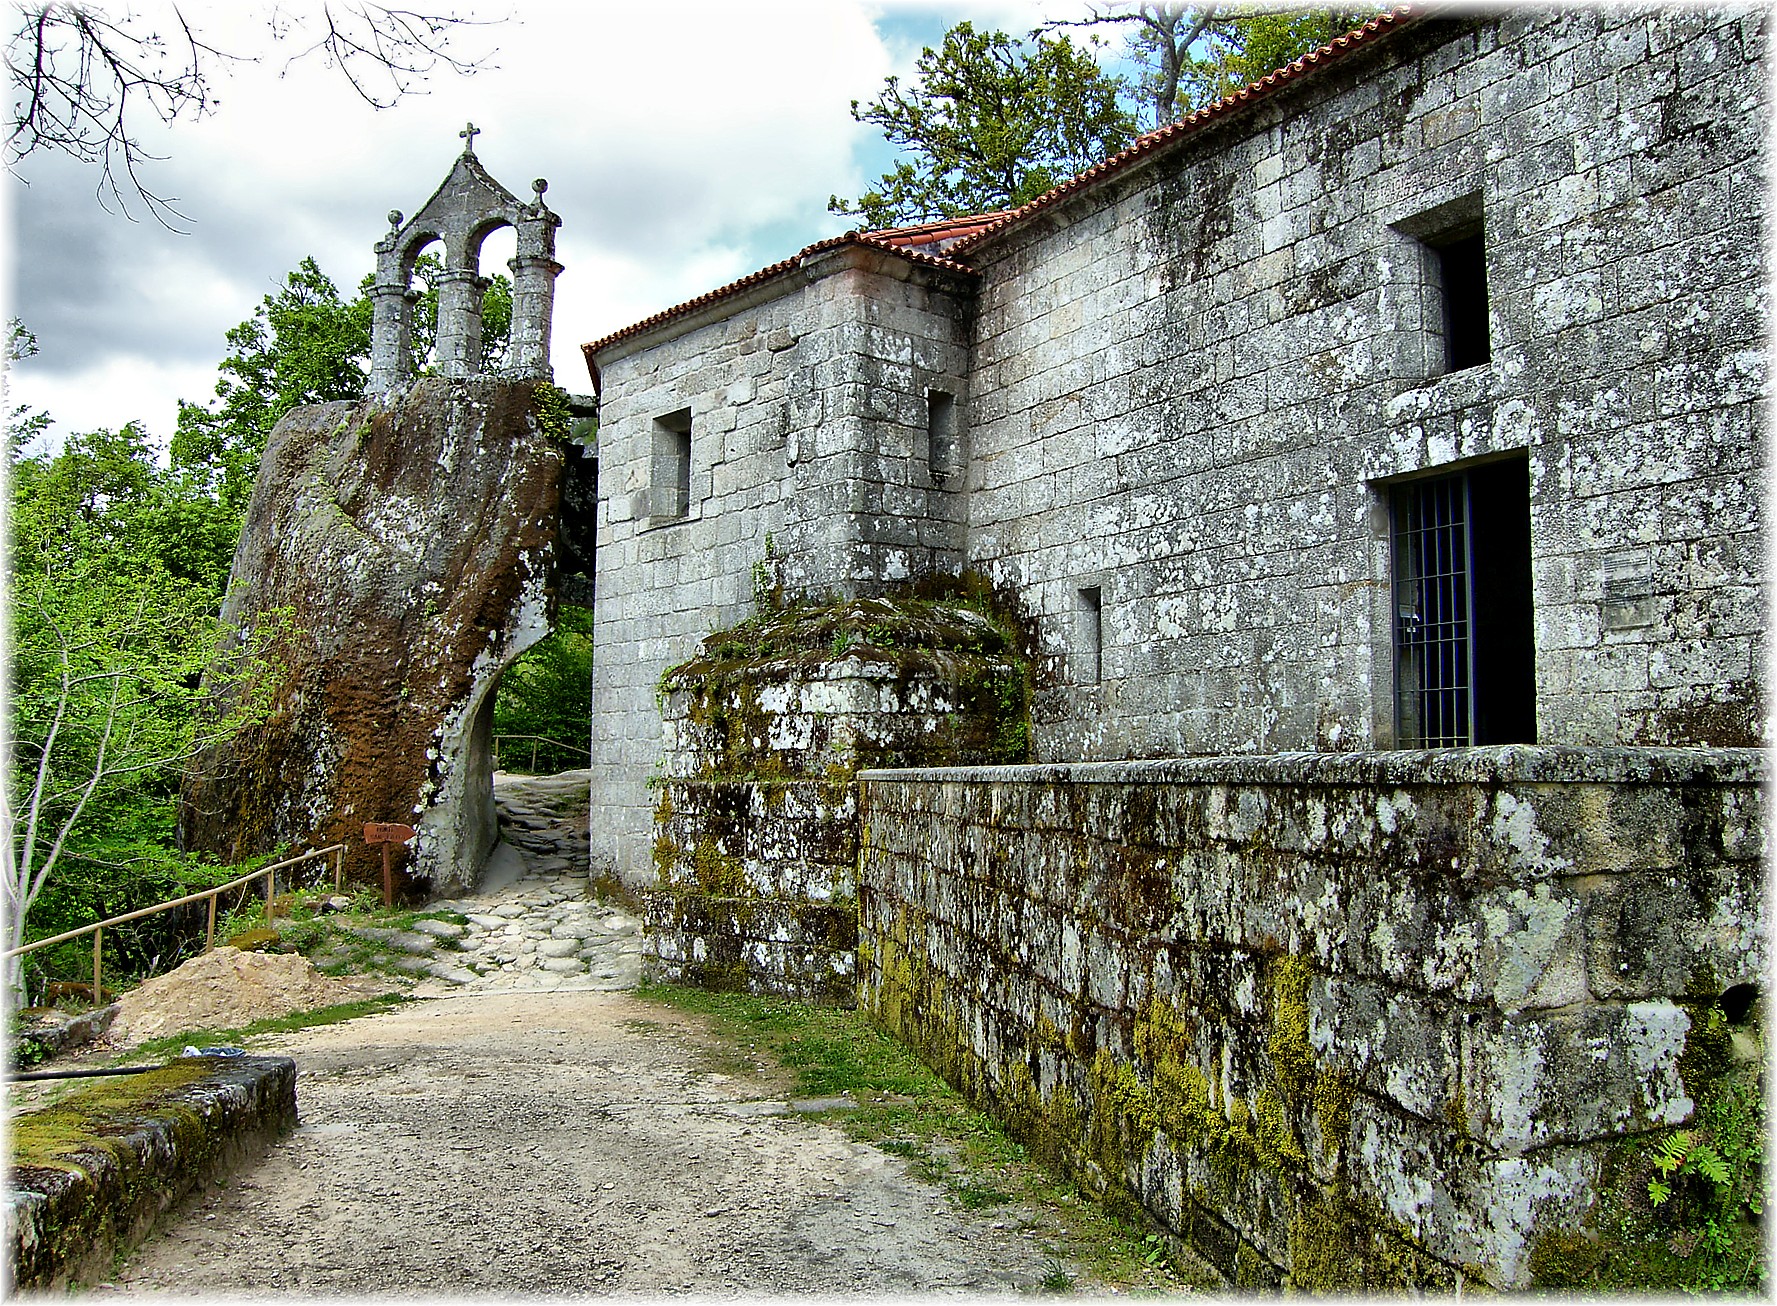 Abbey of San Pedro de Rochas, in Esgos